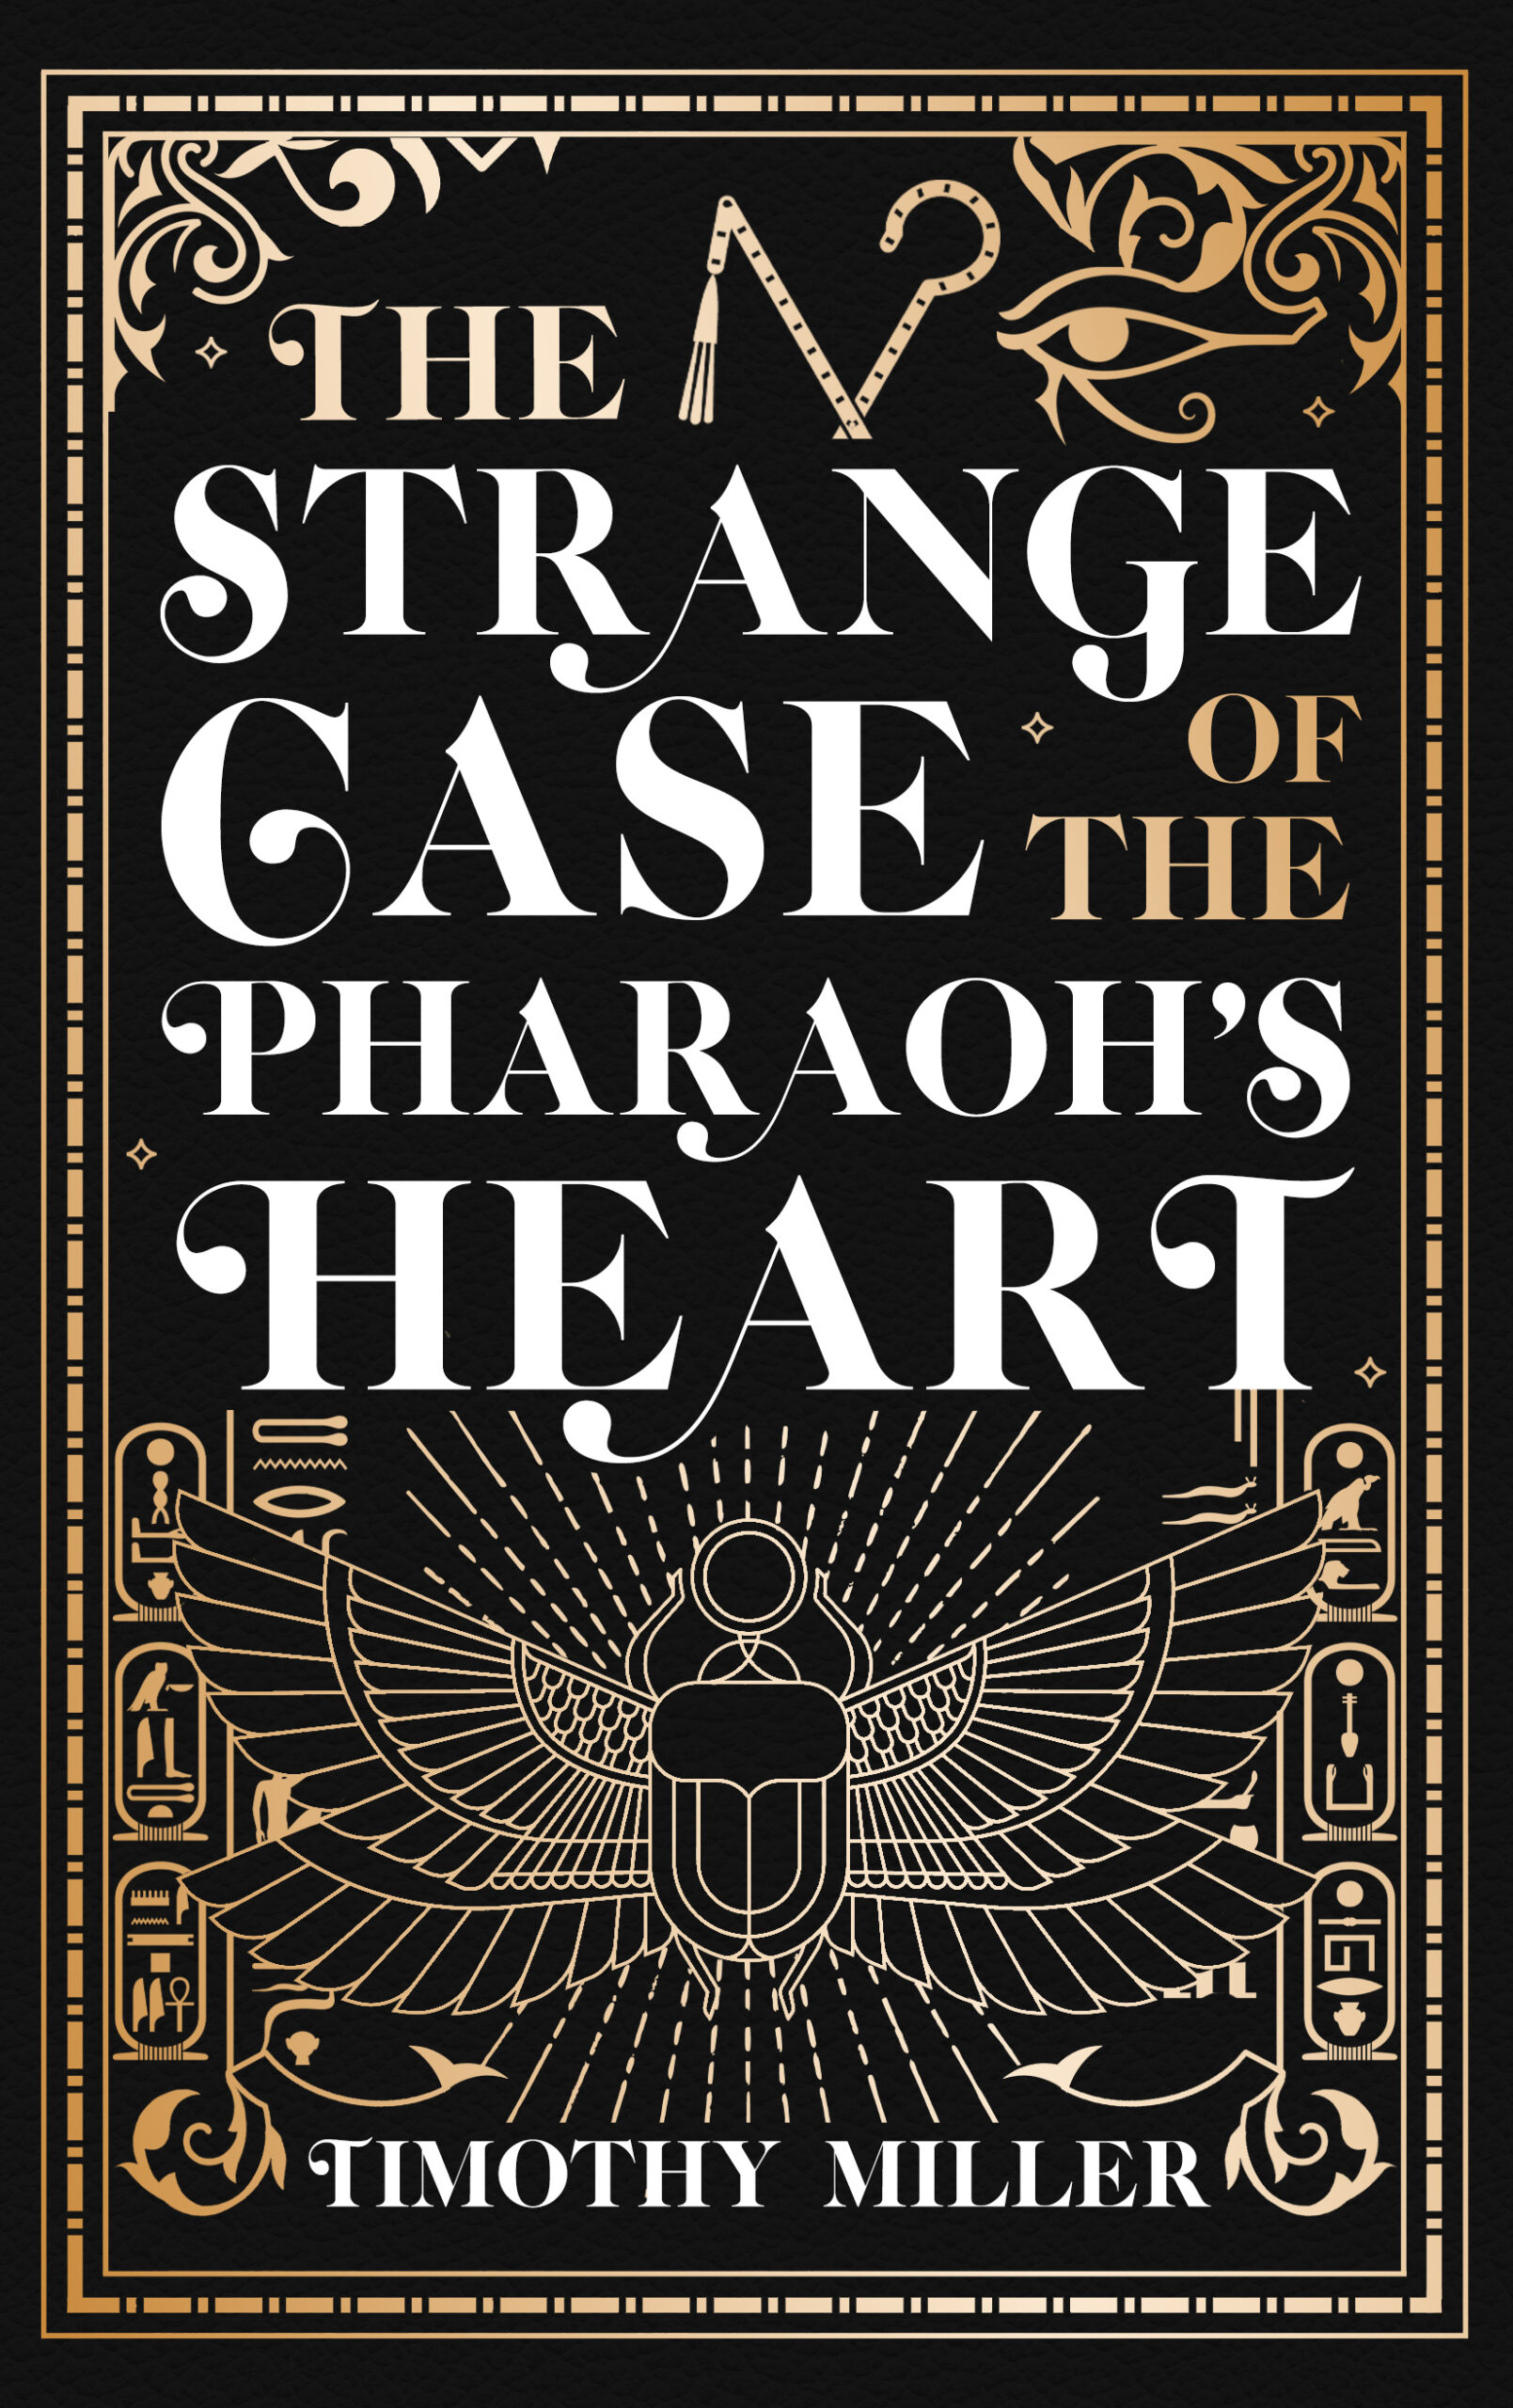 The Strange Case of the Pharaoh’s Heart